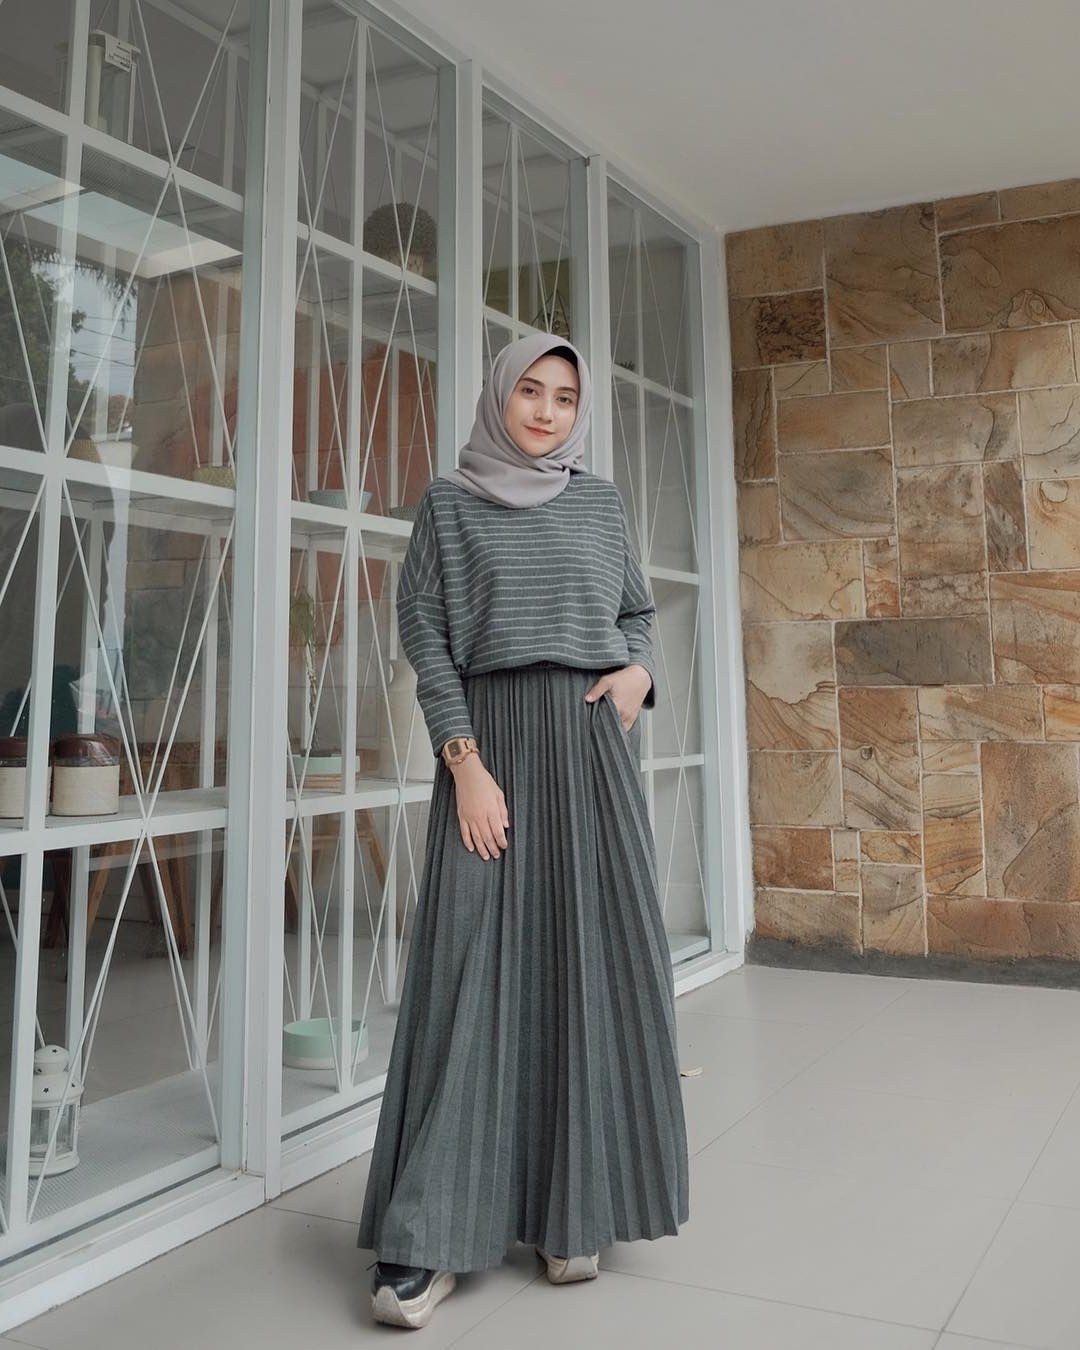 Inspirasi Model Baju Lebaran 2019 Pria Drdp Baju Muslim Lebaran Terbaru 2019